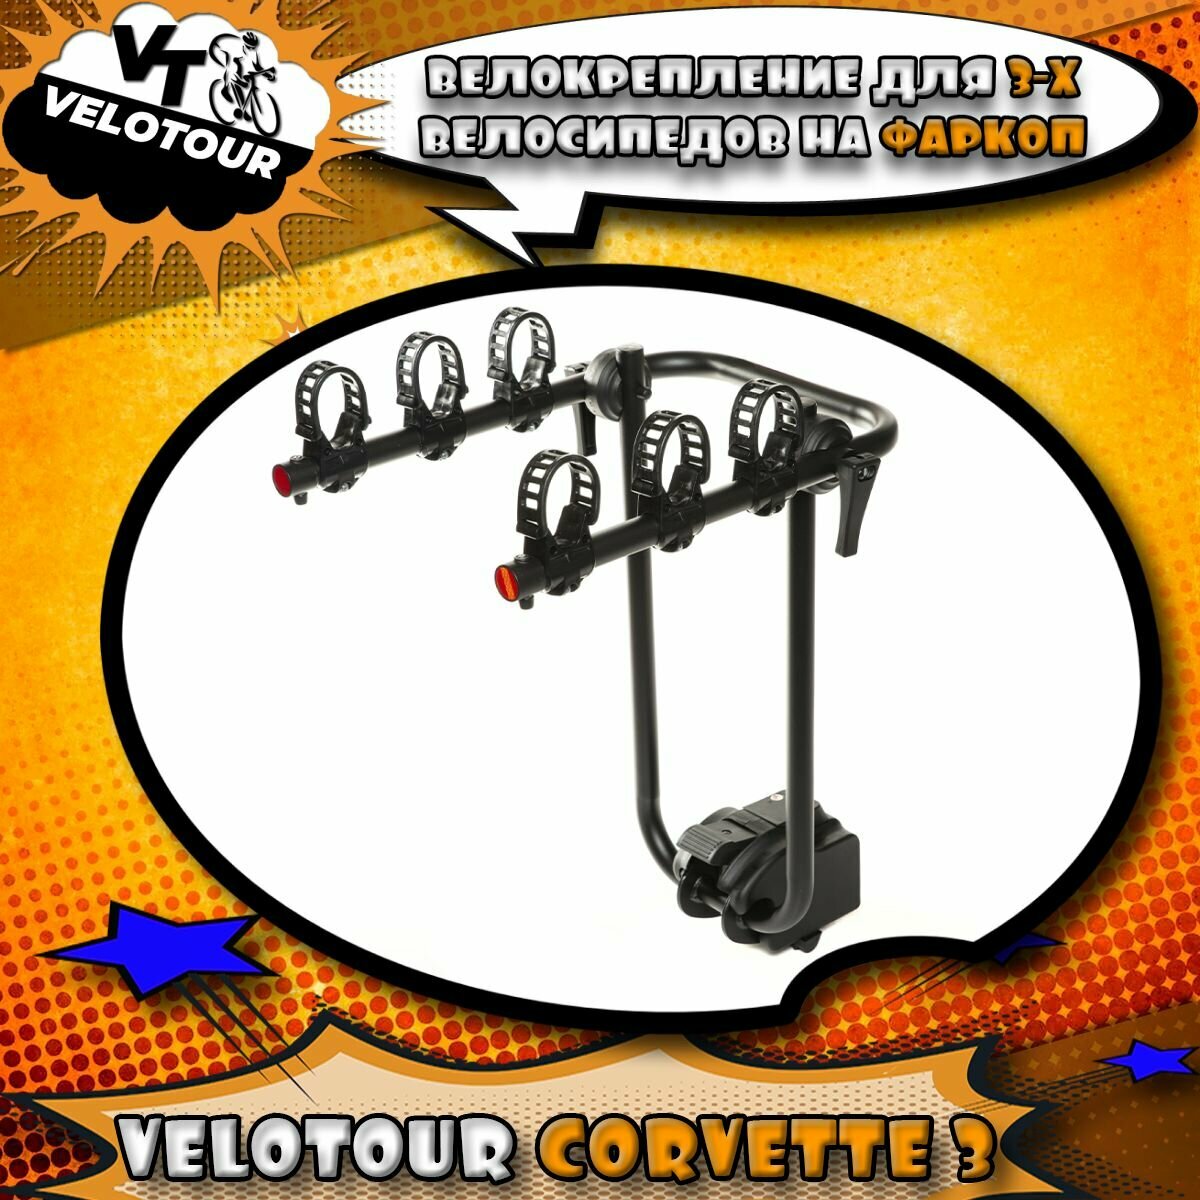 Велобагажник для перевозки велосипедов на фаркоп VeloTour Corvette 3 (TB-502-3) для 3-х велосипедов чёрный (коробка)